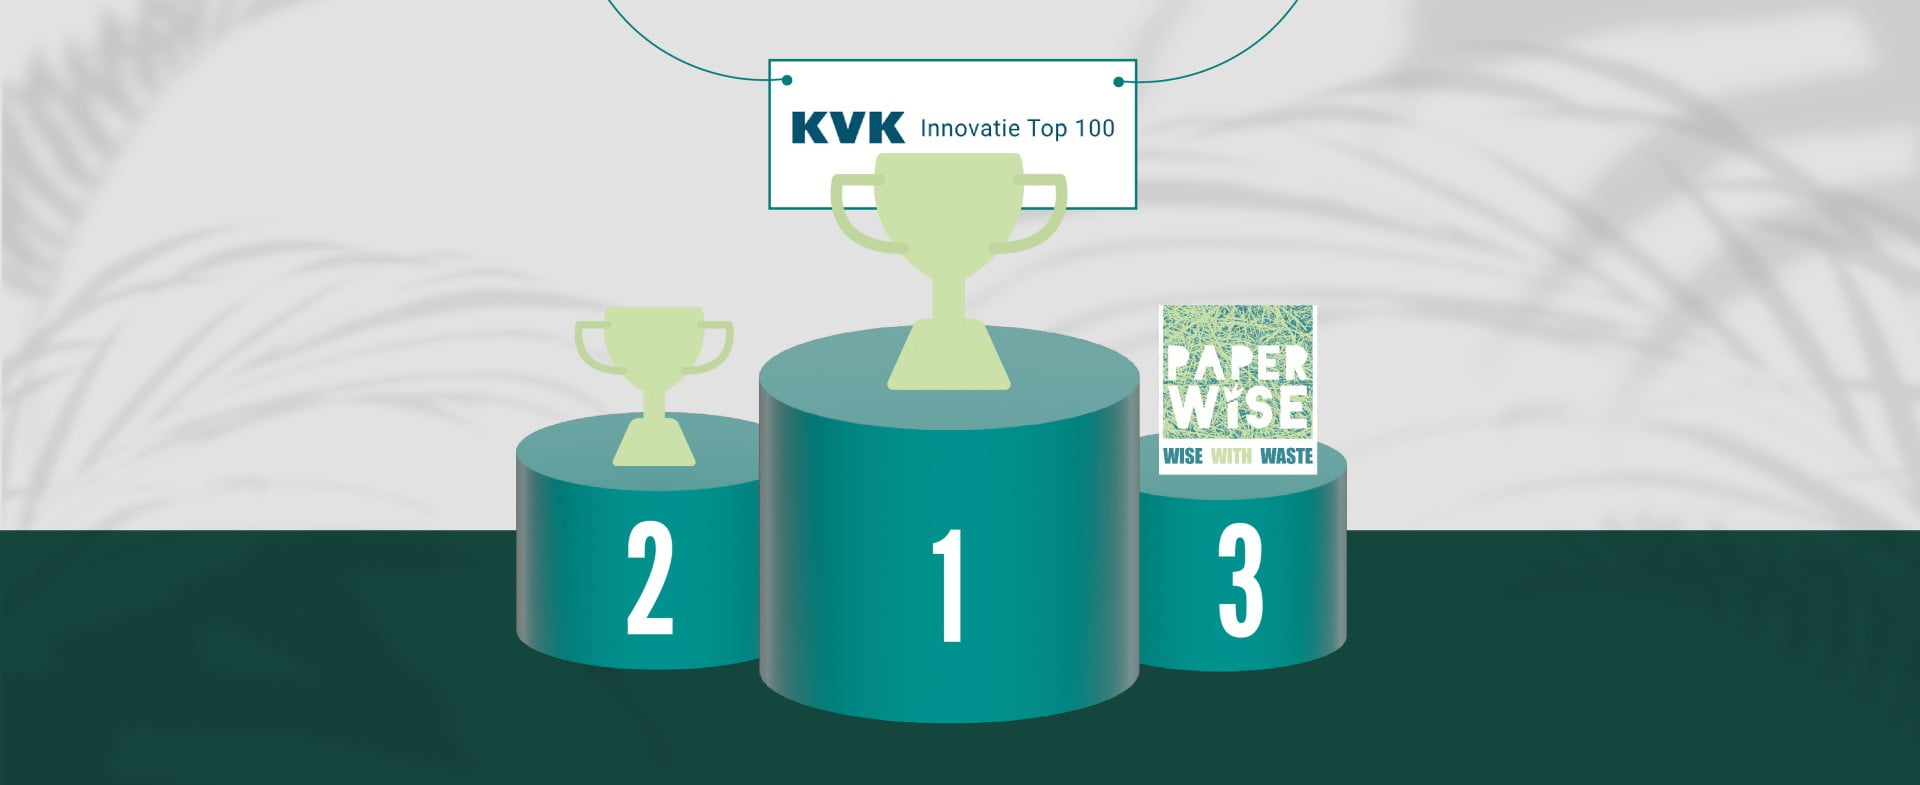 PaperWise verovert derde plek in de KvK innovatie top 100